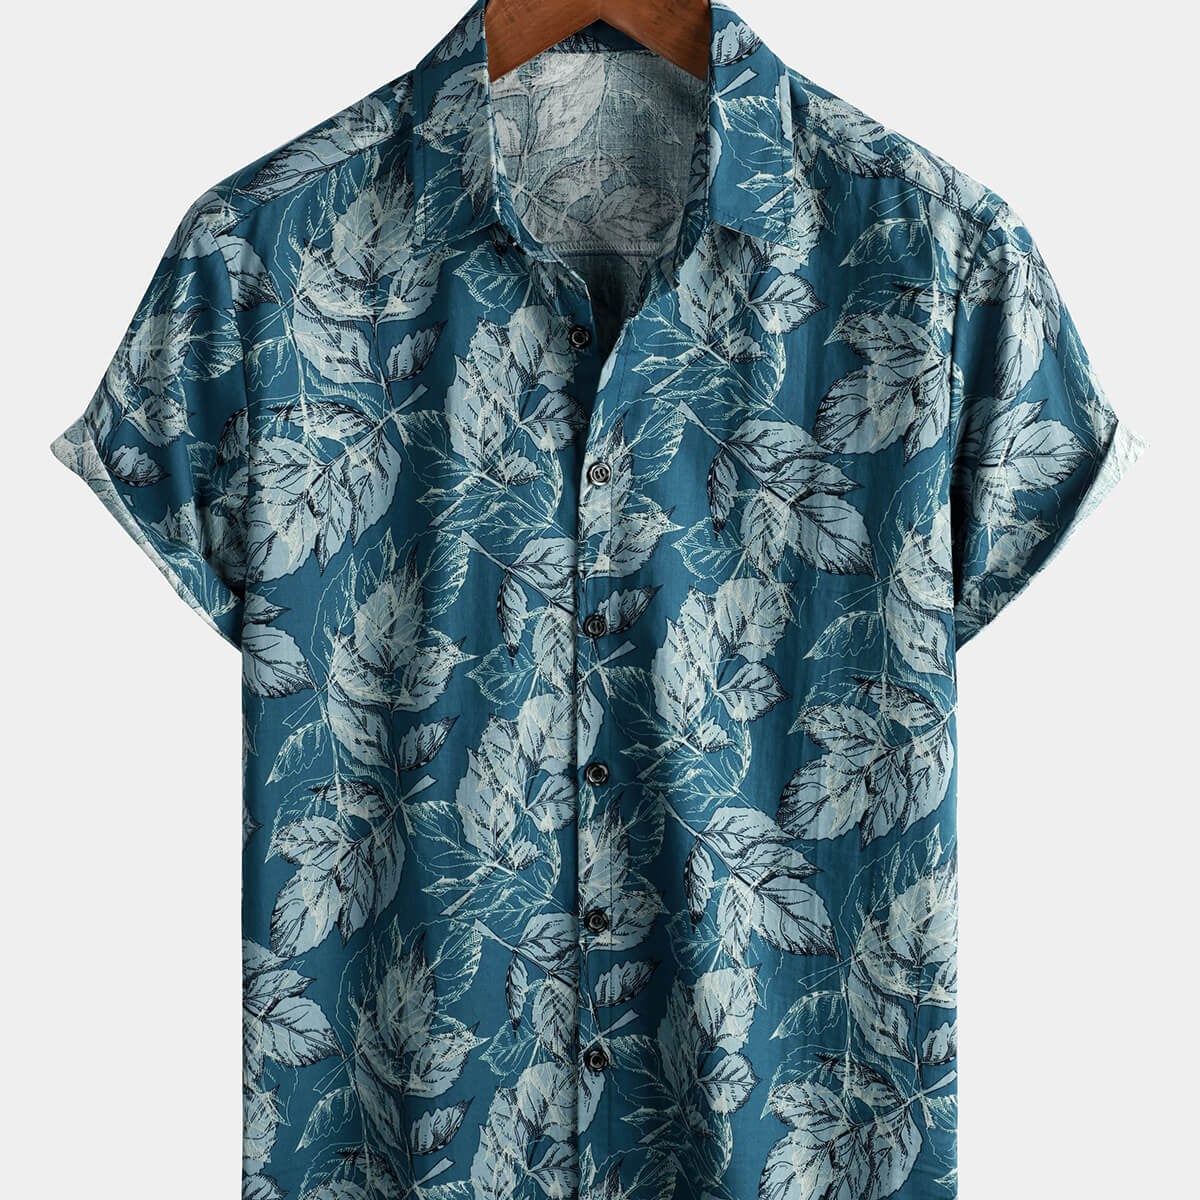 Camisa hawaiana de manga corta con botones para playa con estampado de hojas azules vintage de algodón para hombre